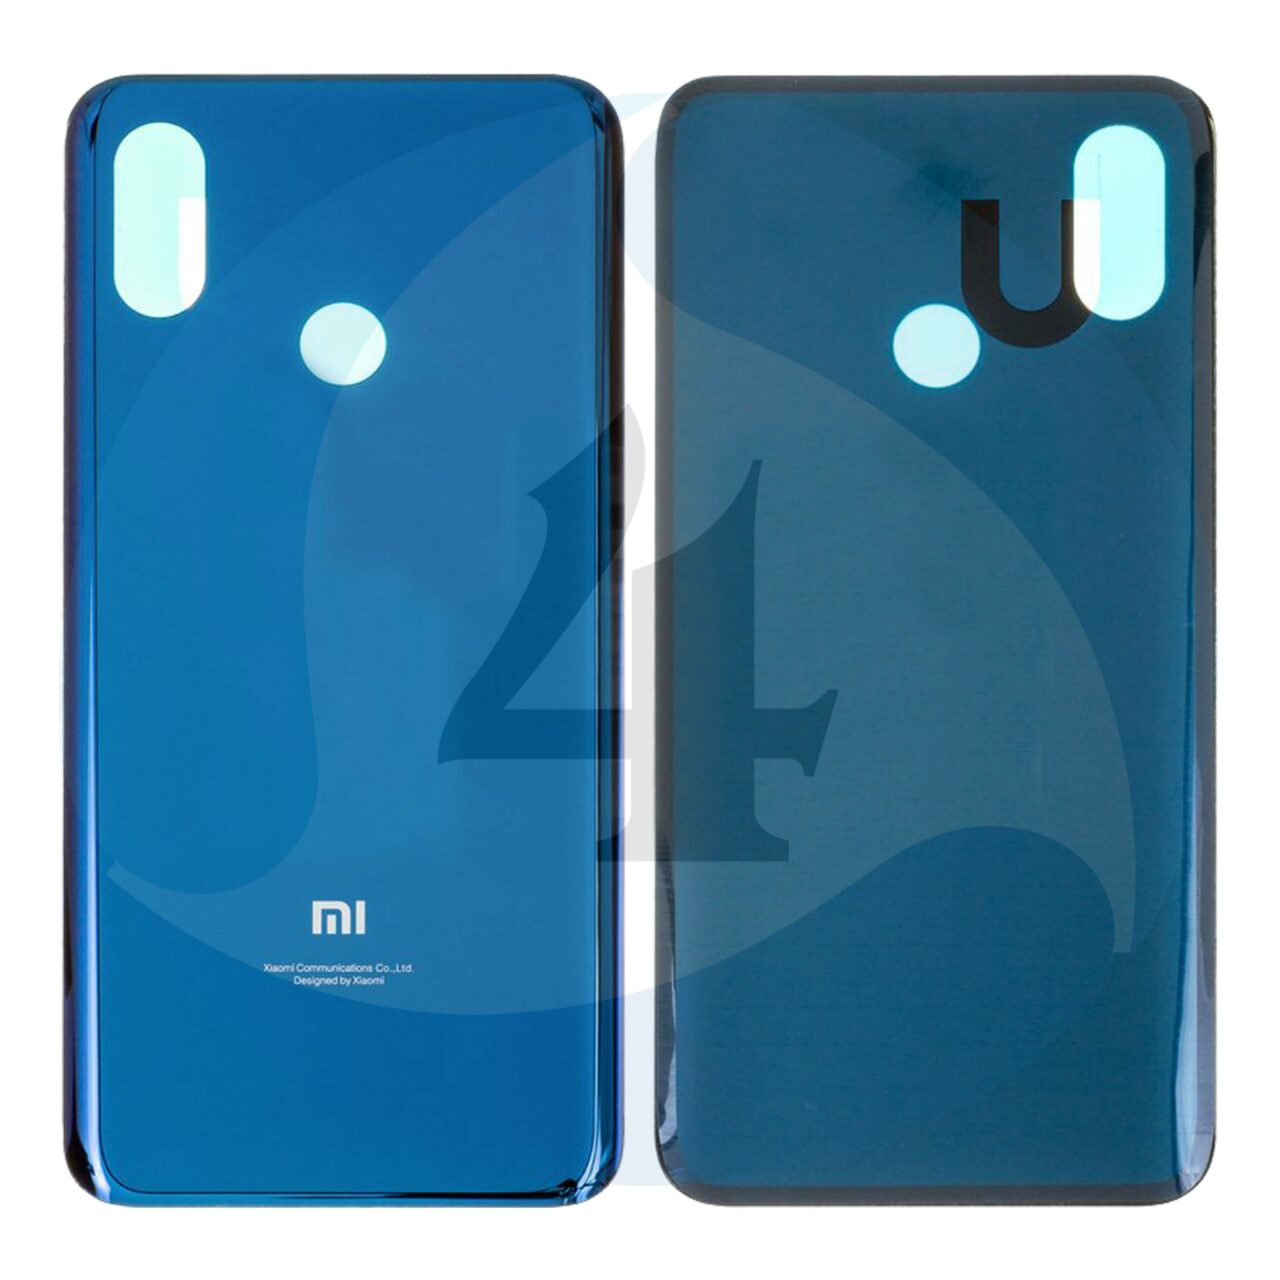 Backcover Blue For Xiaomi Mi 8 M1803 E1 A